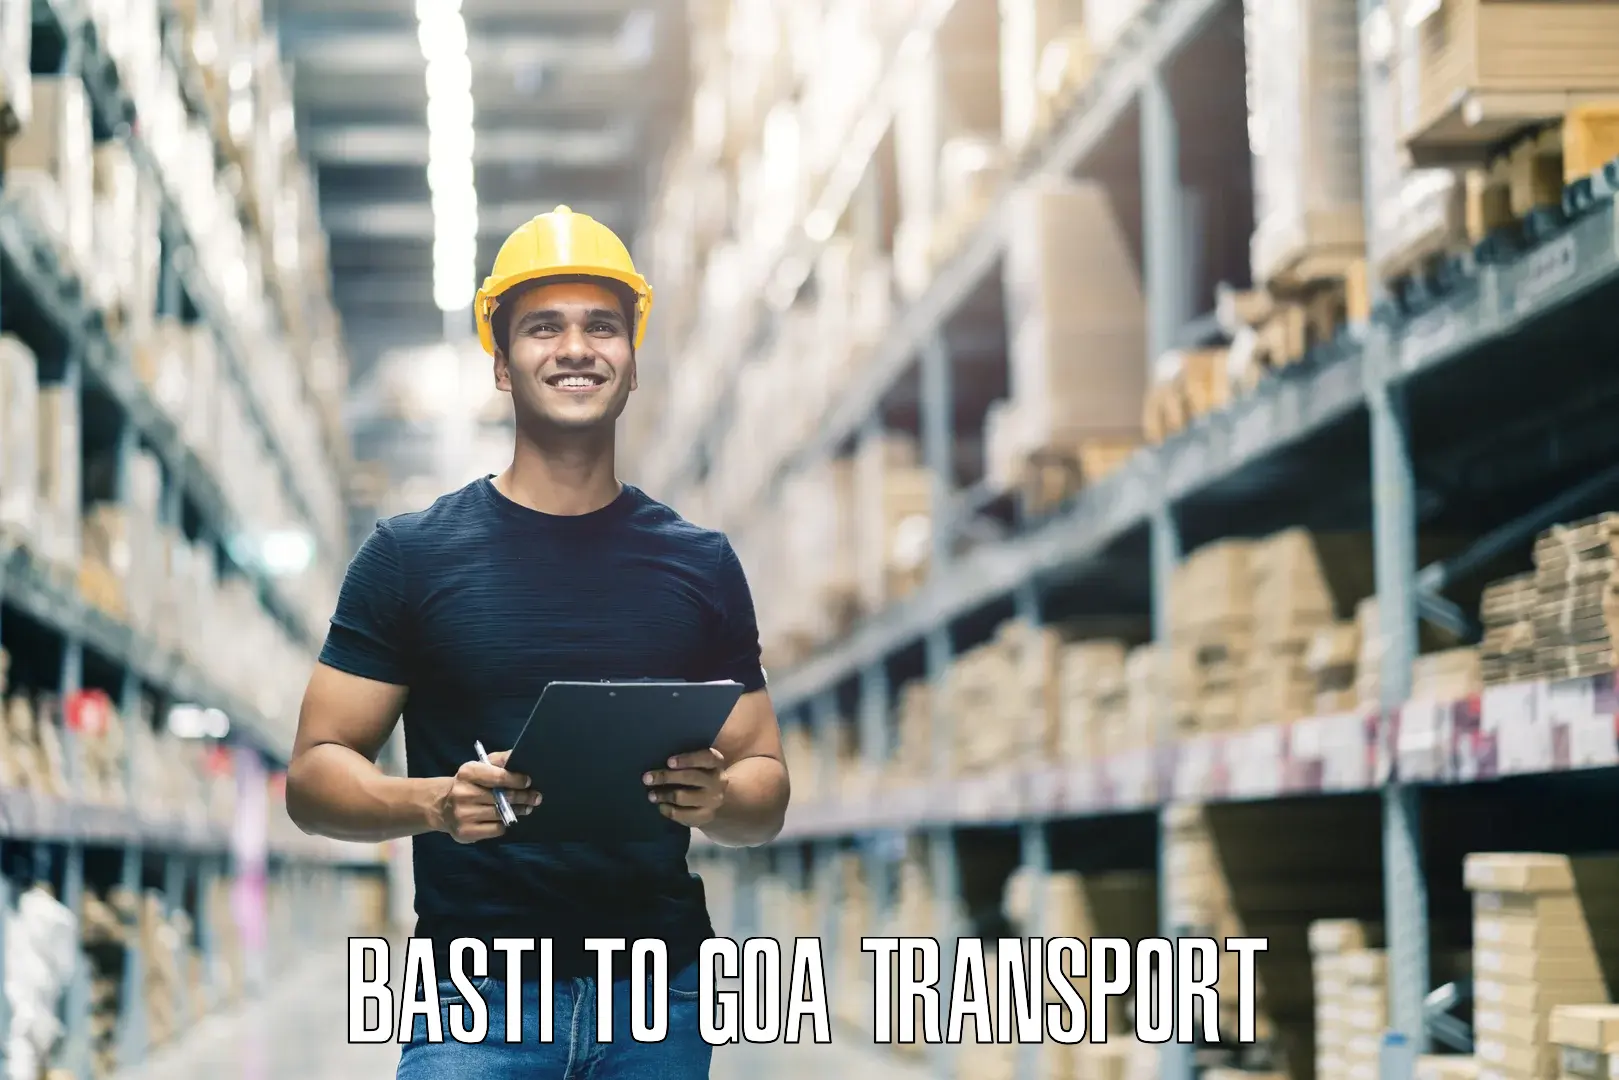 Daily transport service Basti to Panjim